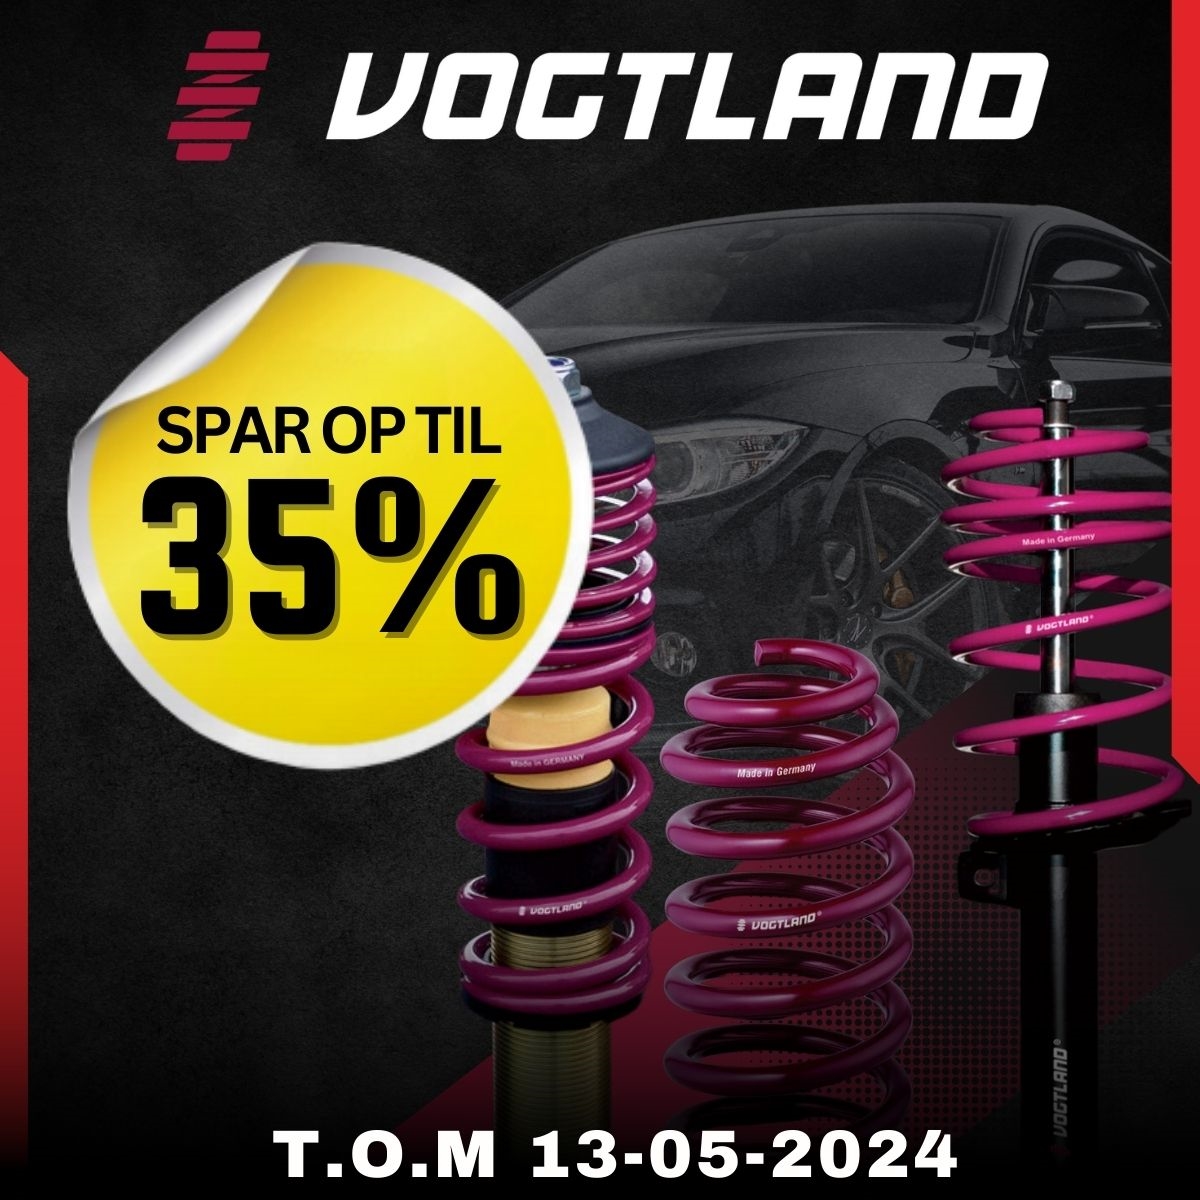 Spar Op til 35% på Vogtland, sænk bilen med deres gevindundervogne, sænkningssæt eller sportsundervogne